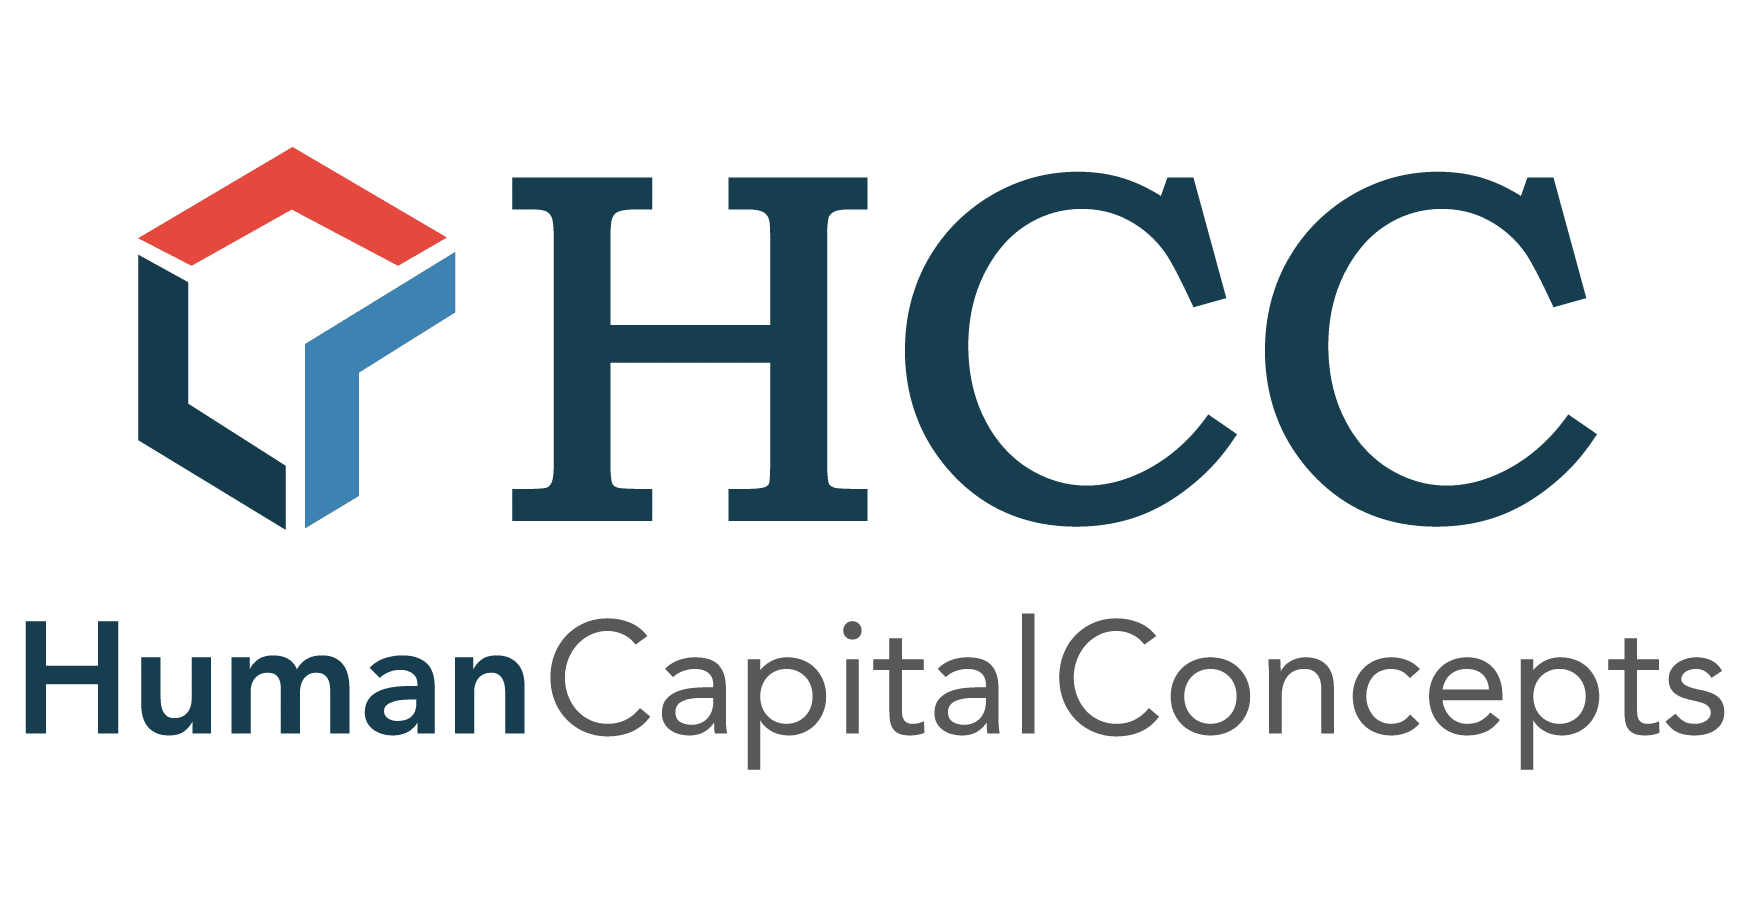 Human Capital Concepts